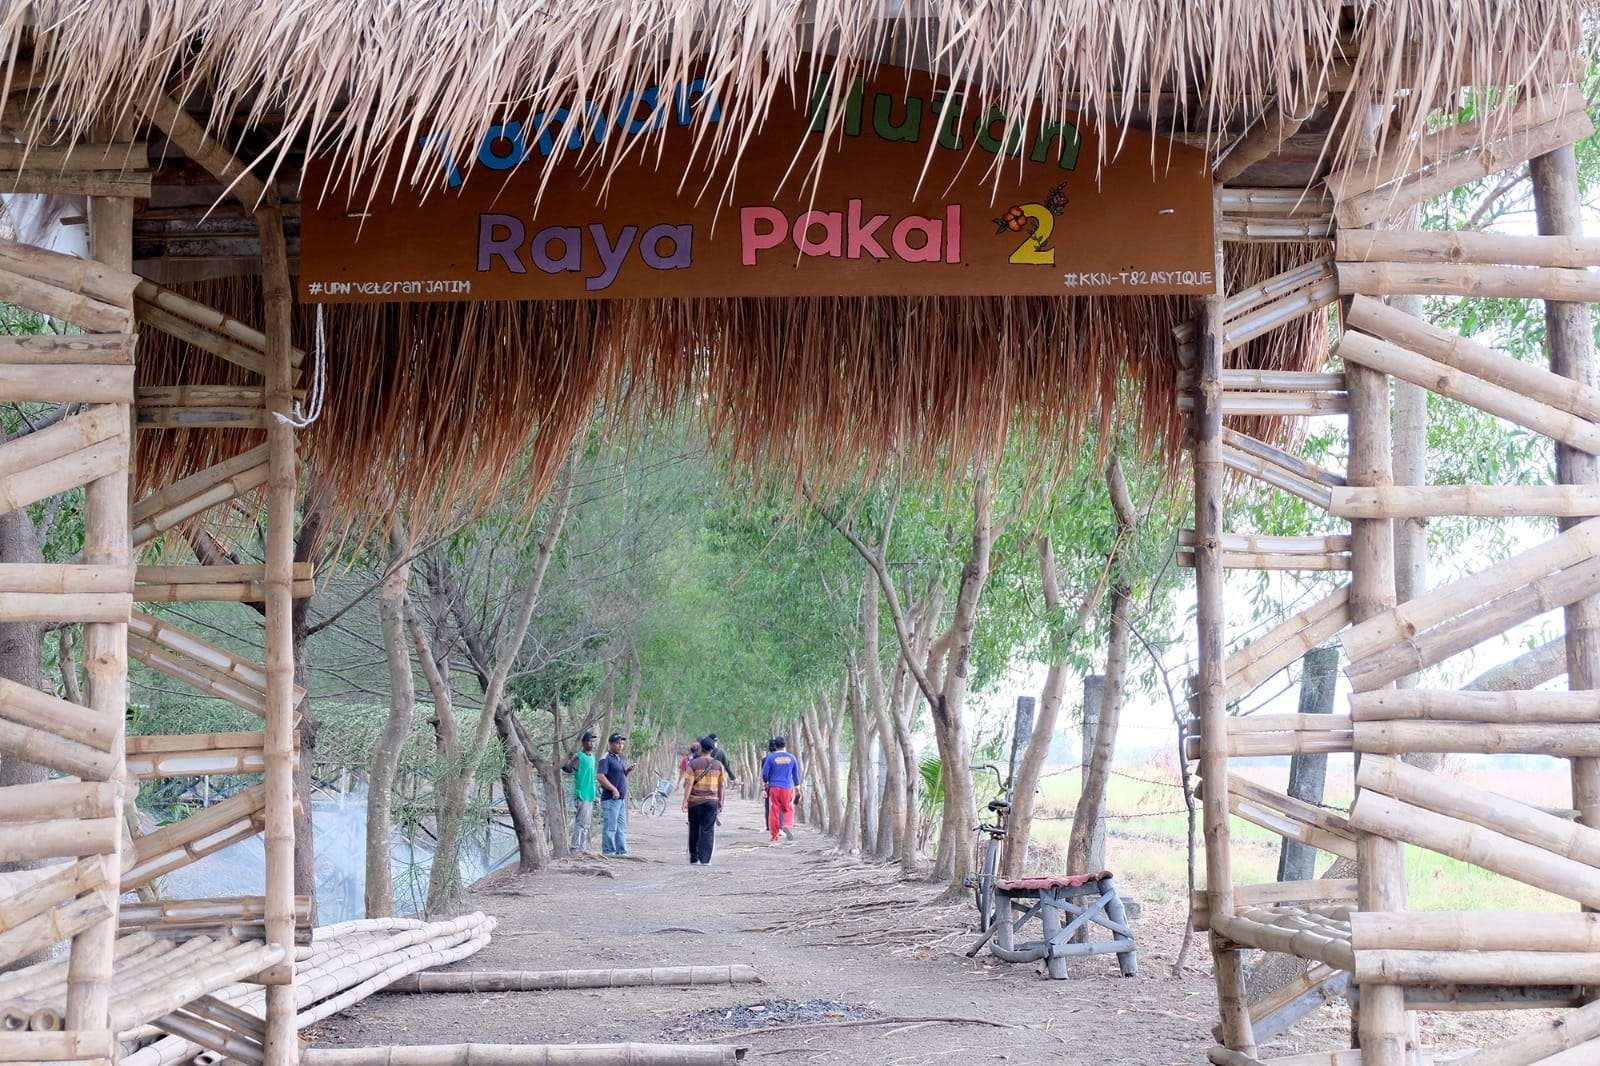 Taman Hutan Raya Pakal Surabaya sedang dalam tahap pembangunan untuk wahana baru. (Foto: Humas Pemkot Surabaya)